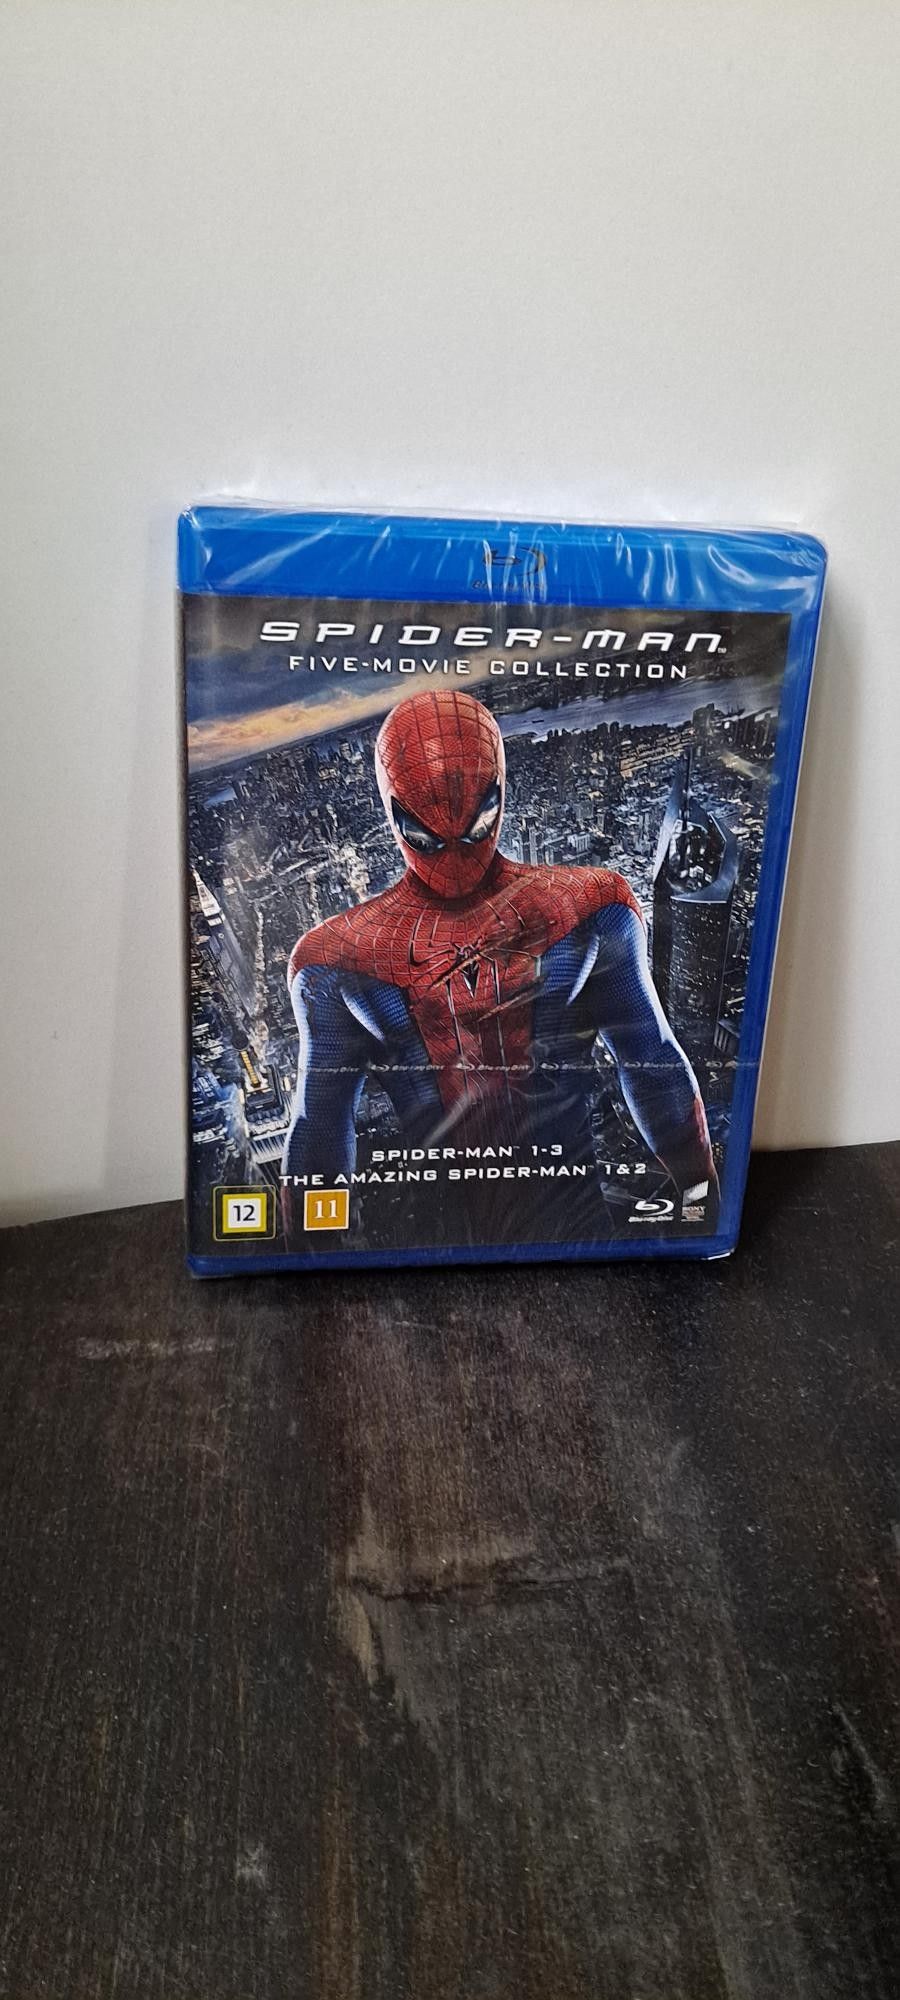 Spider-man viiden elokuvan kokoelma (muoveissa) Blu-ray